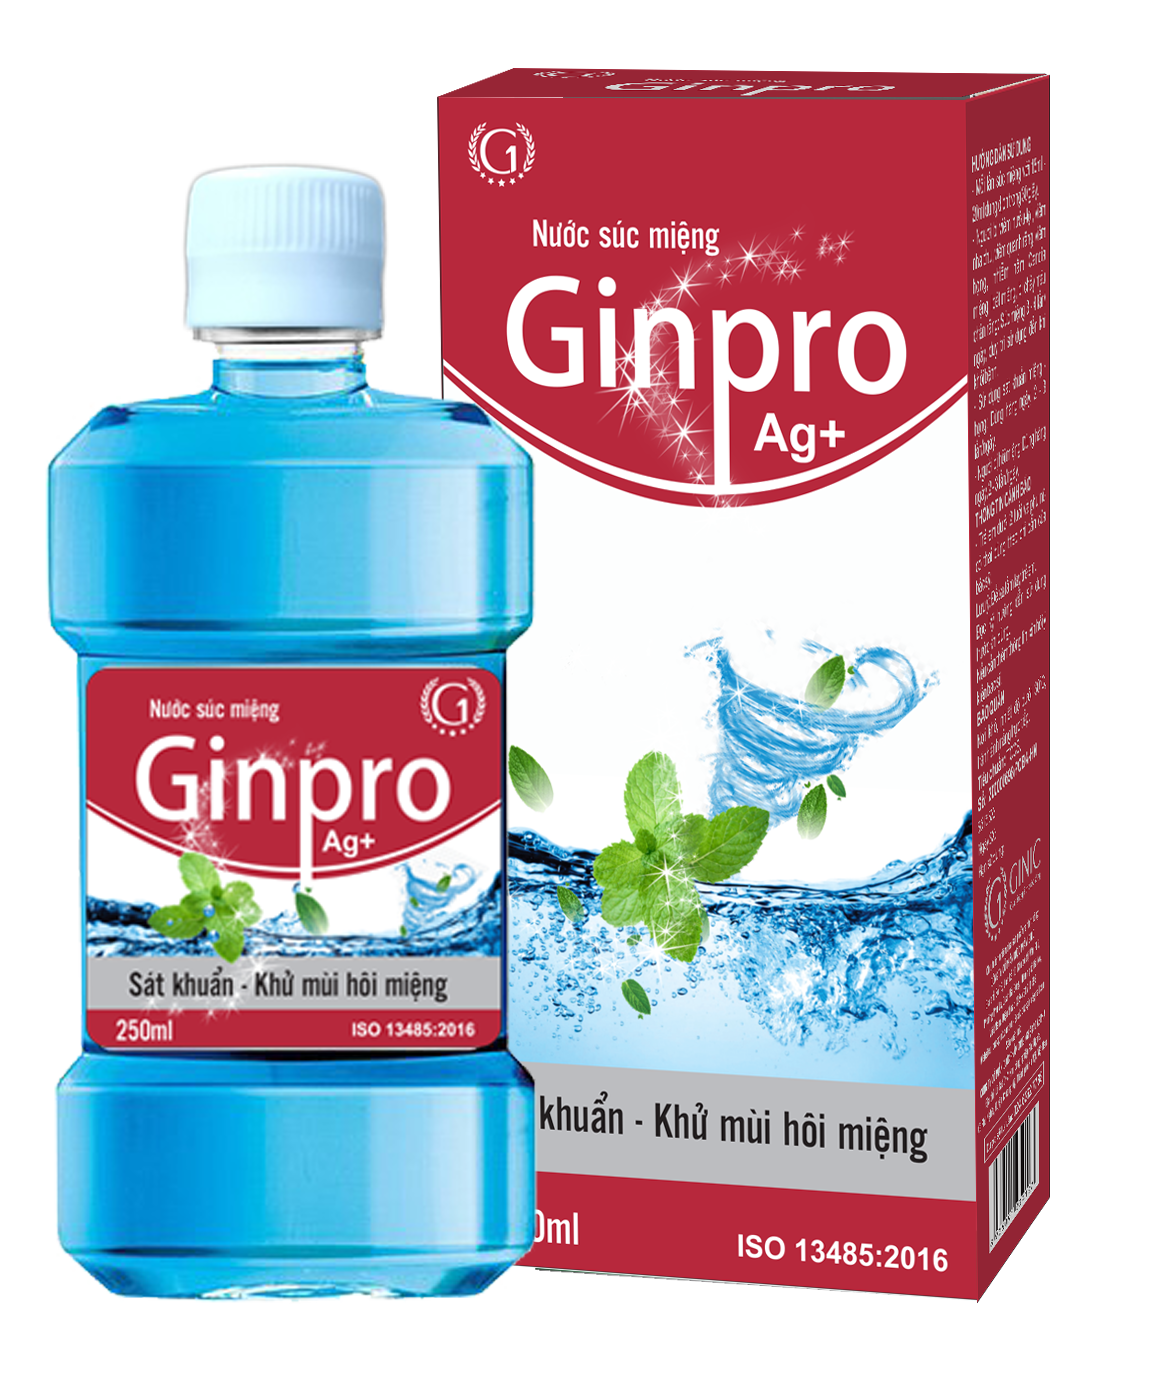 Nước súc miệng Ginpro